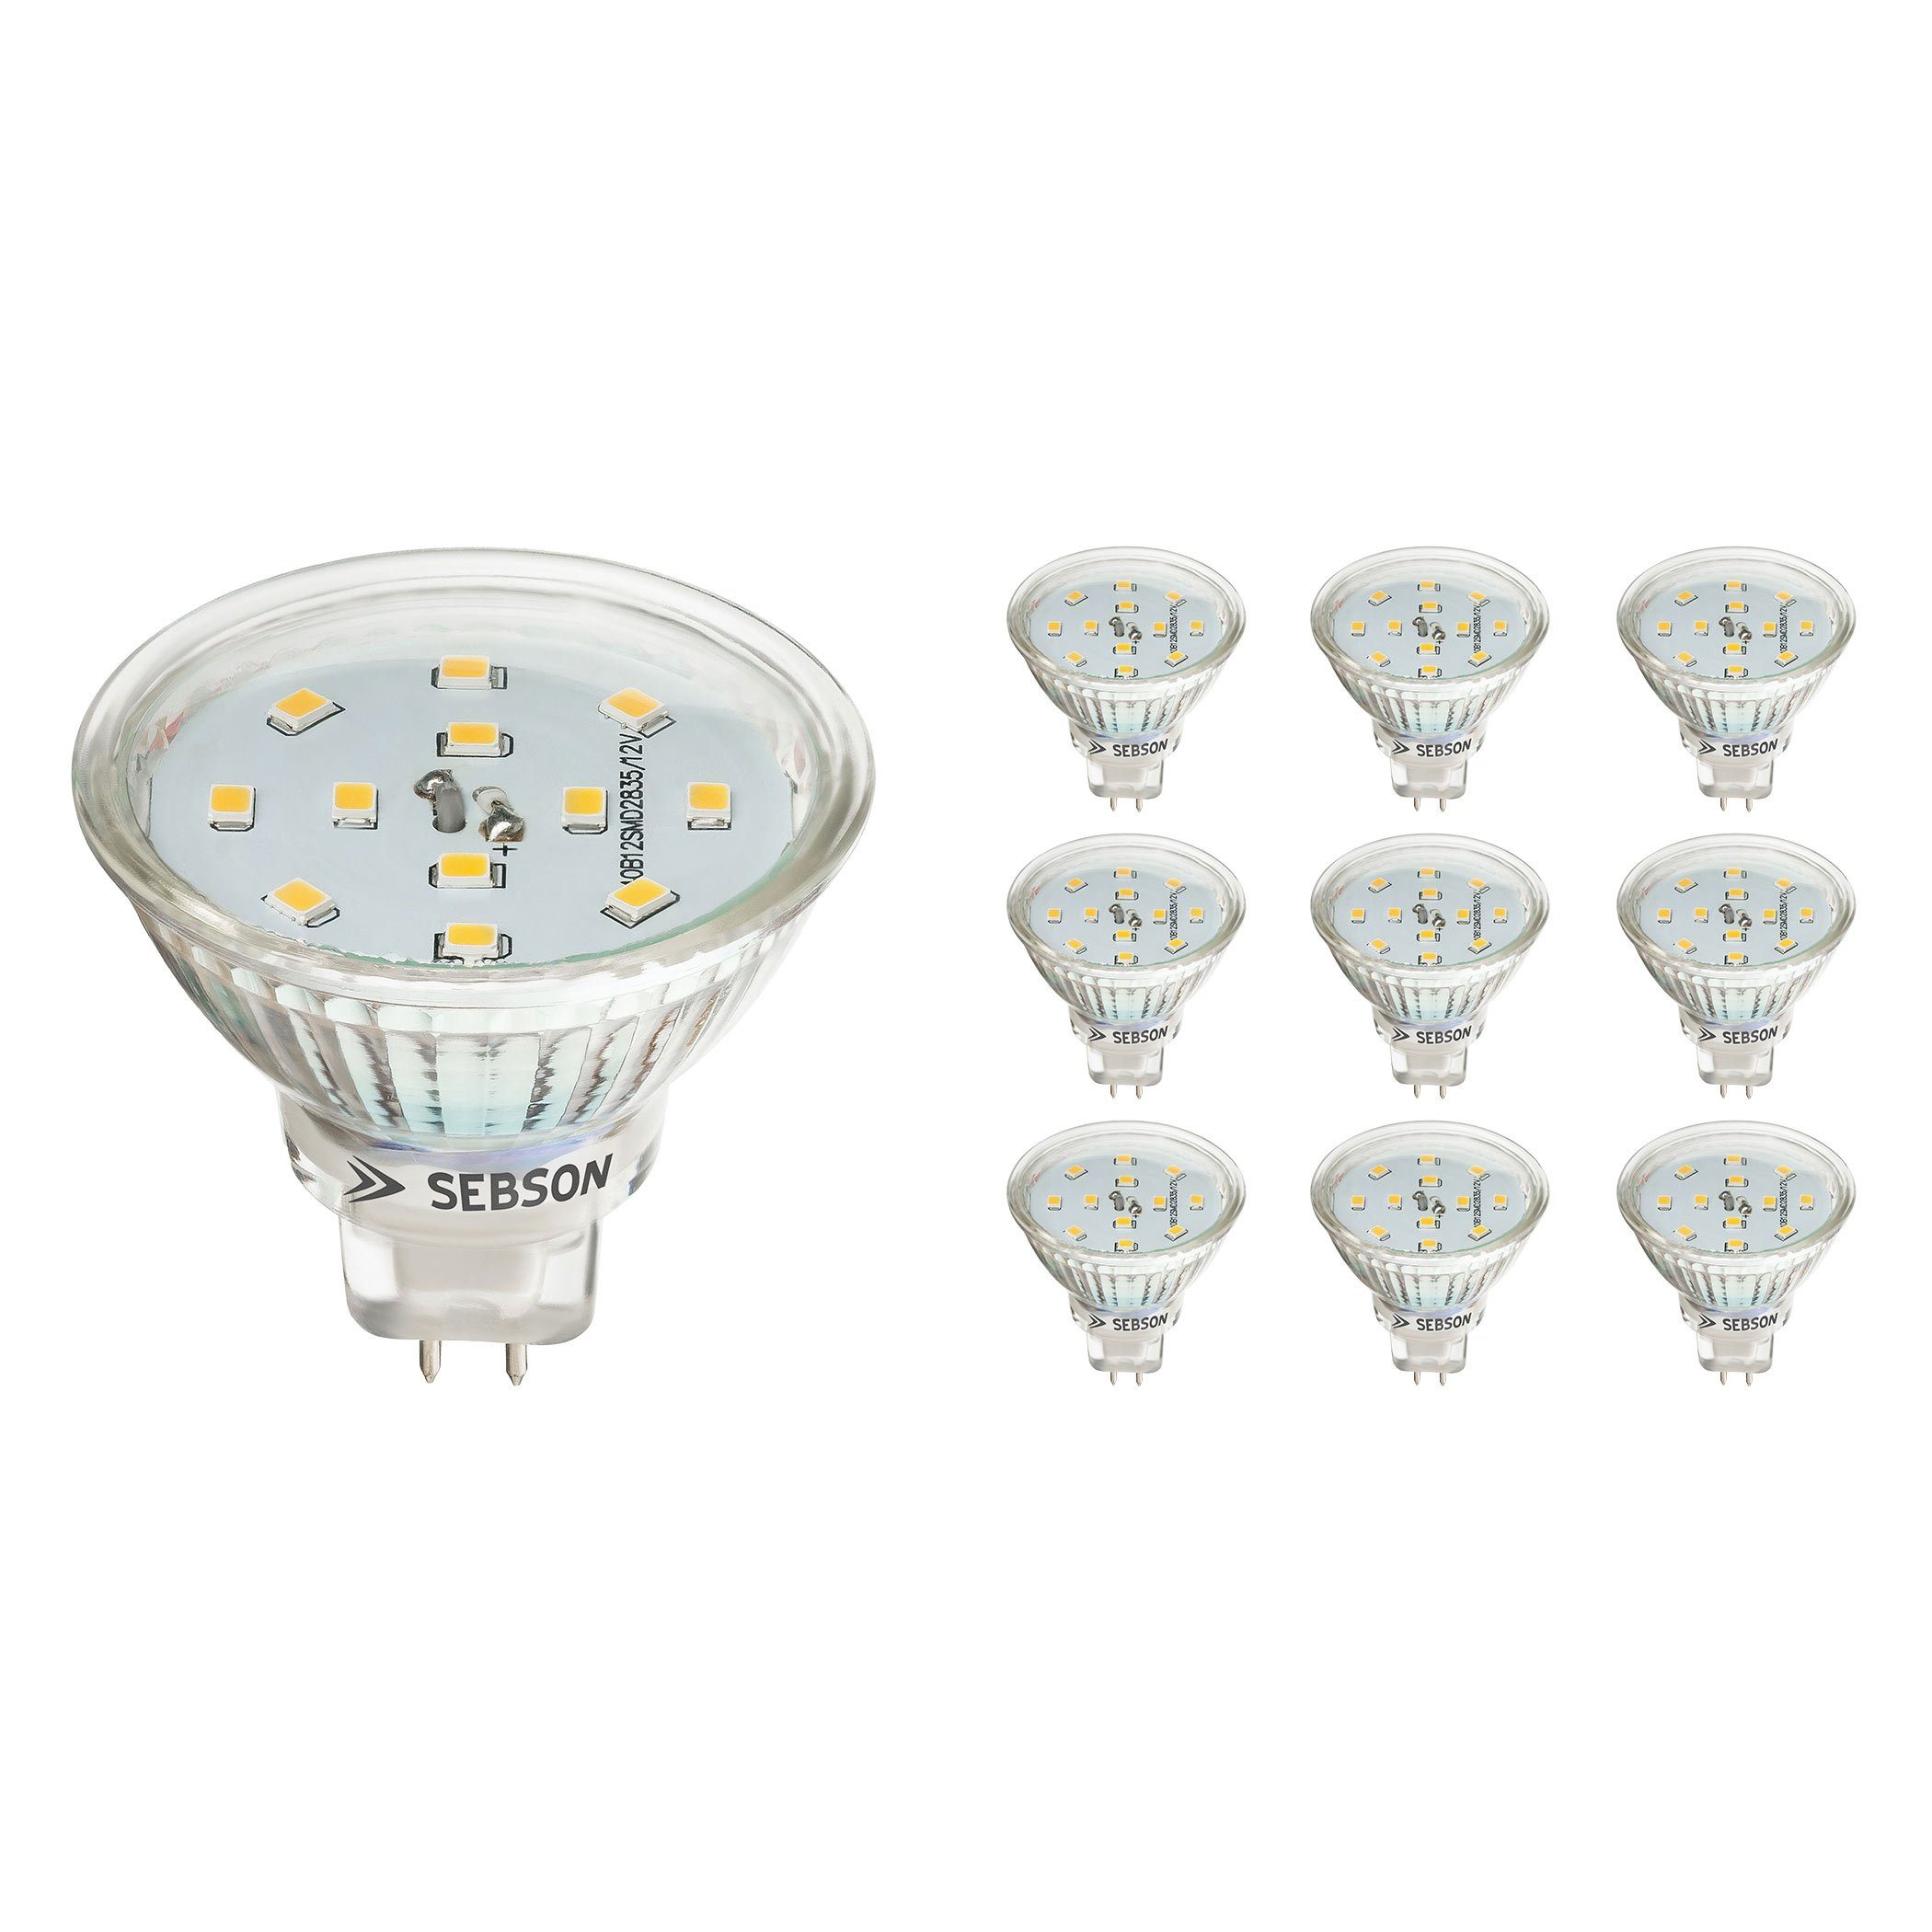 SEBSON LED-Leuchtmittel LED Lampe GU5.3 / MR16 5W warmweiß 3000K 12V Луковицы - 10er Pack